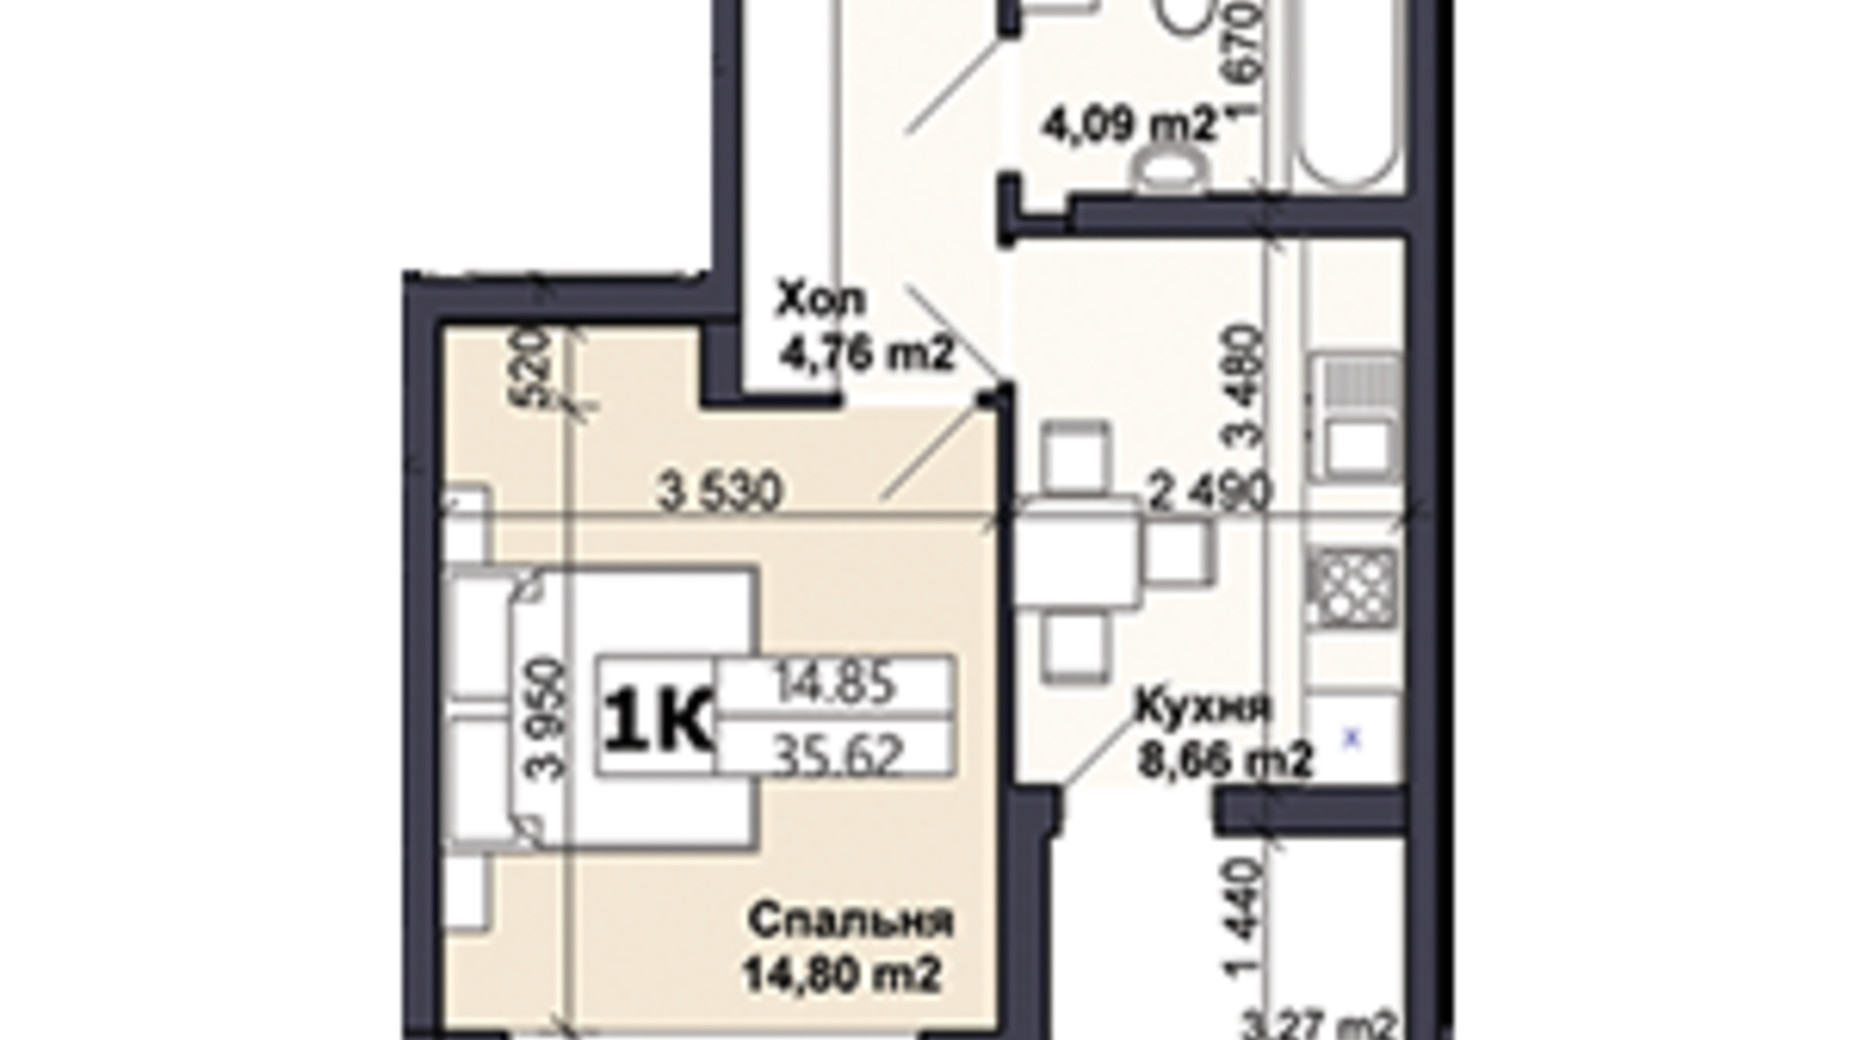 Планировка 1-комнатной квартиры в ЖК Саме той 35.62 м², фото 585407